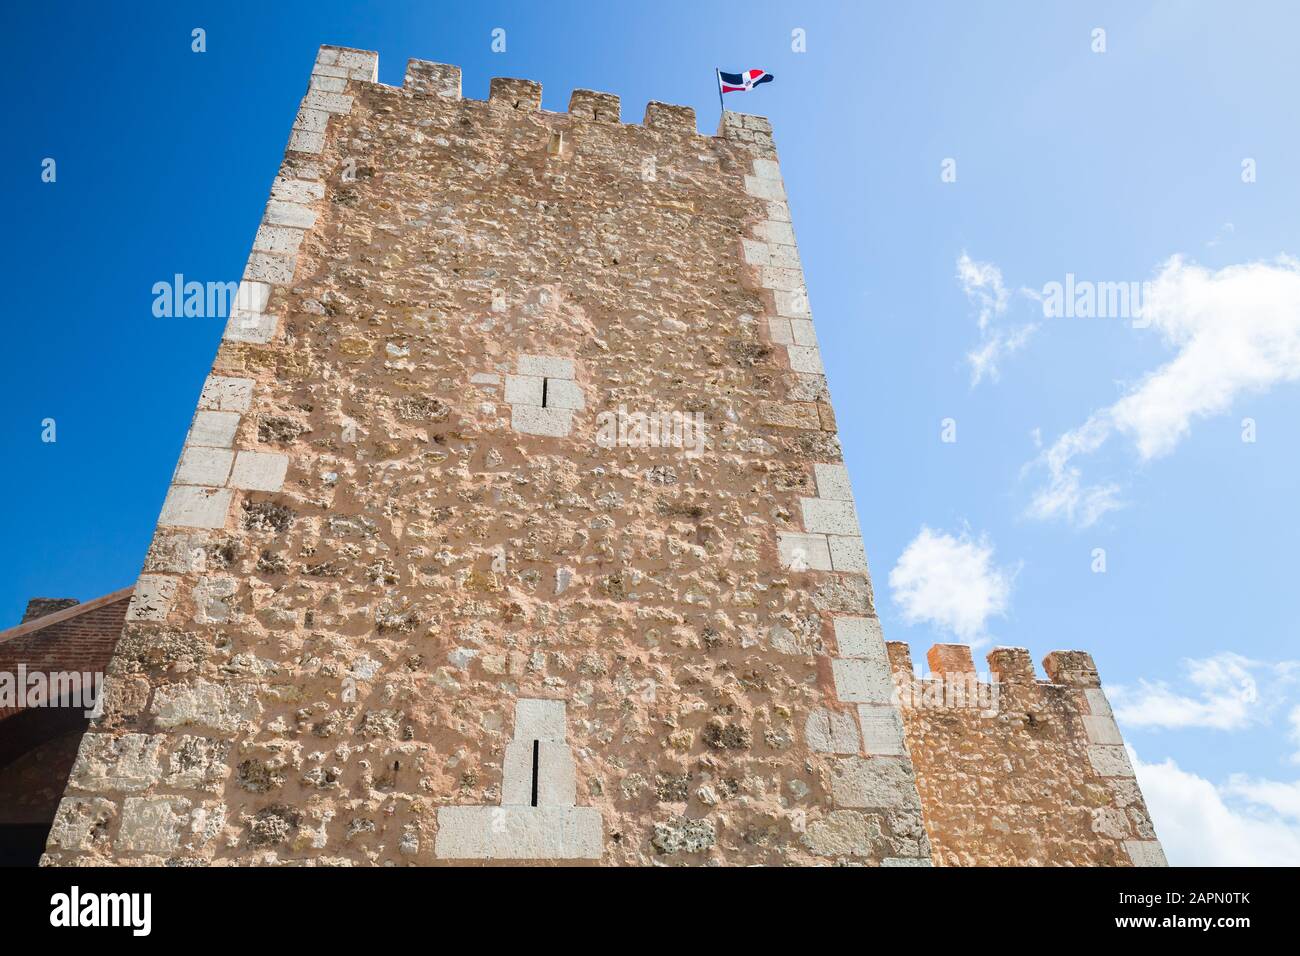 Exterior of the Ozama Fortress, Santo Domingo, Dominican Republic Stock Photo